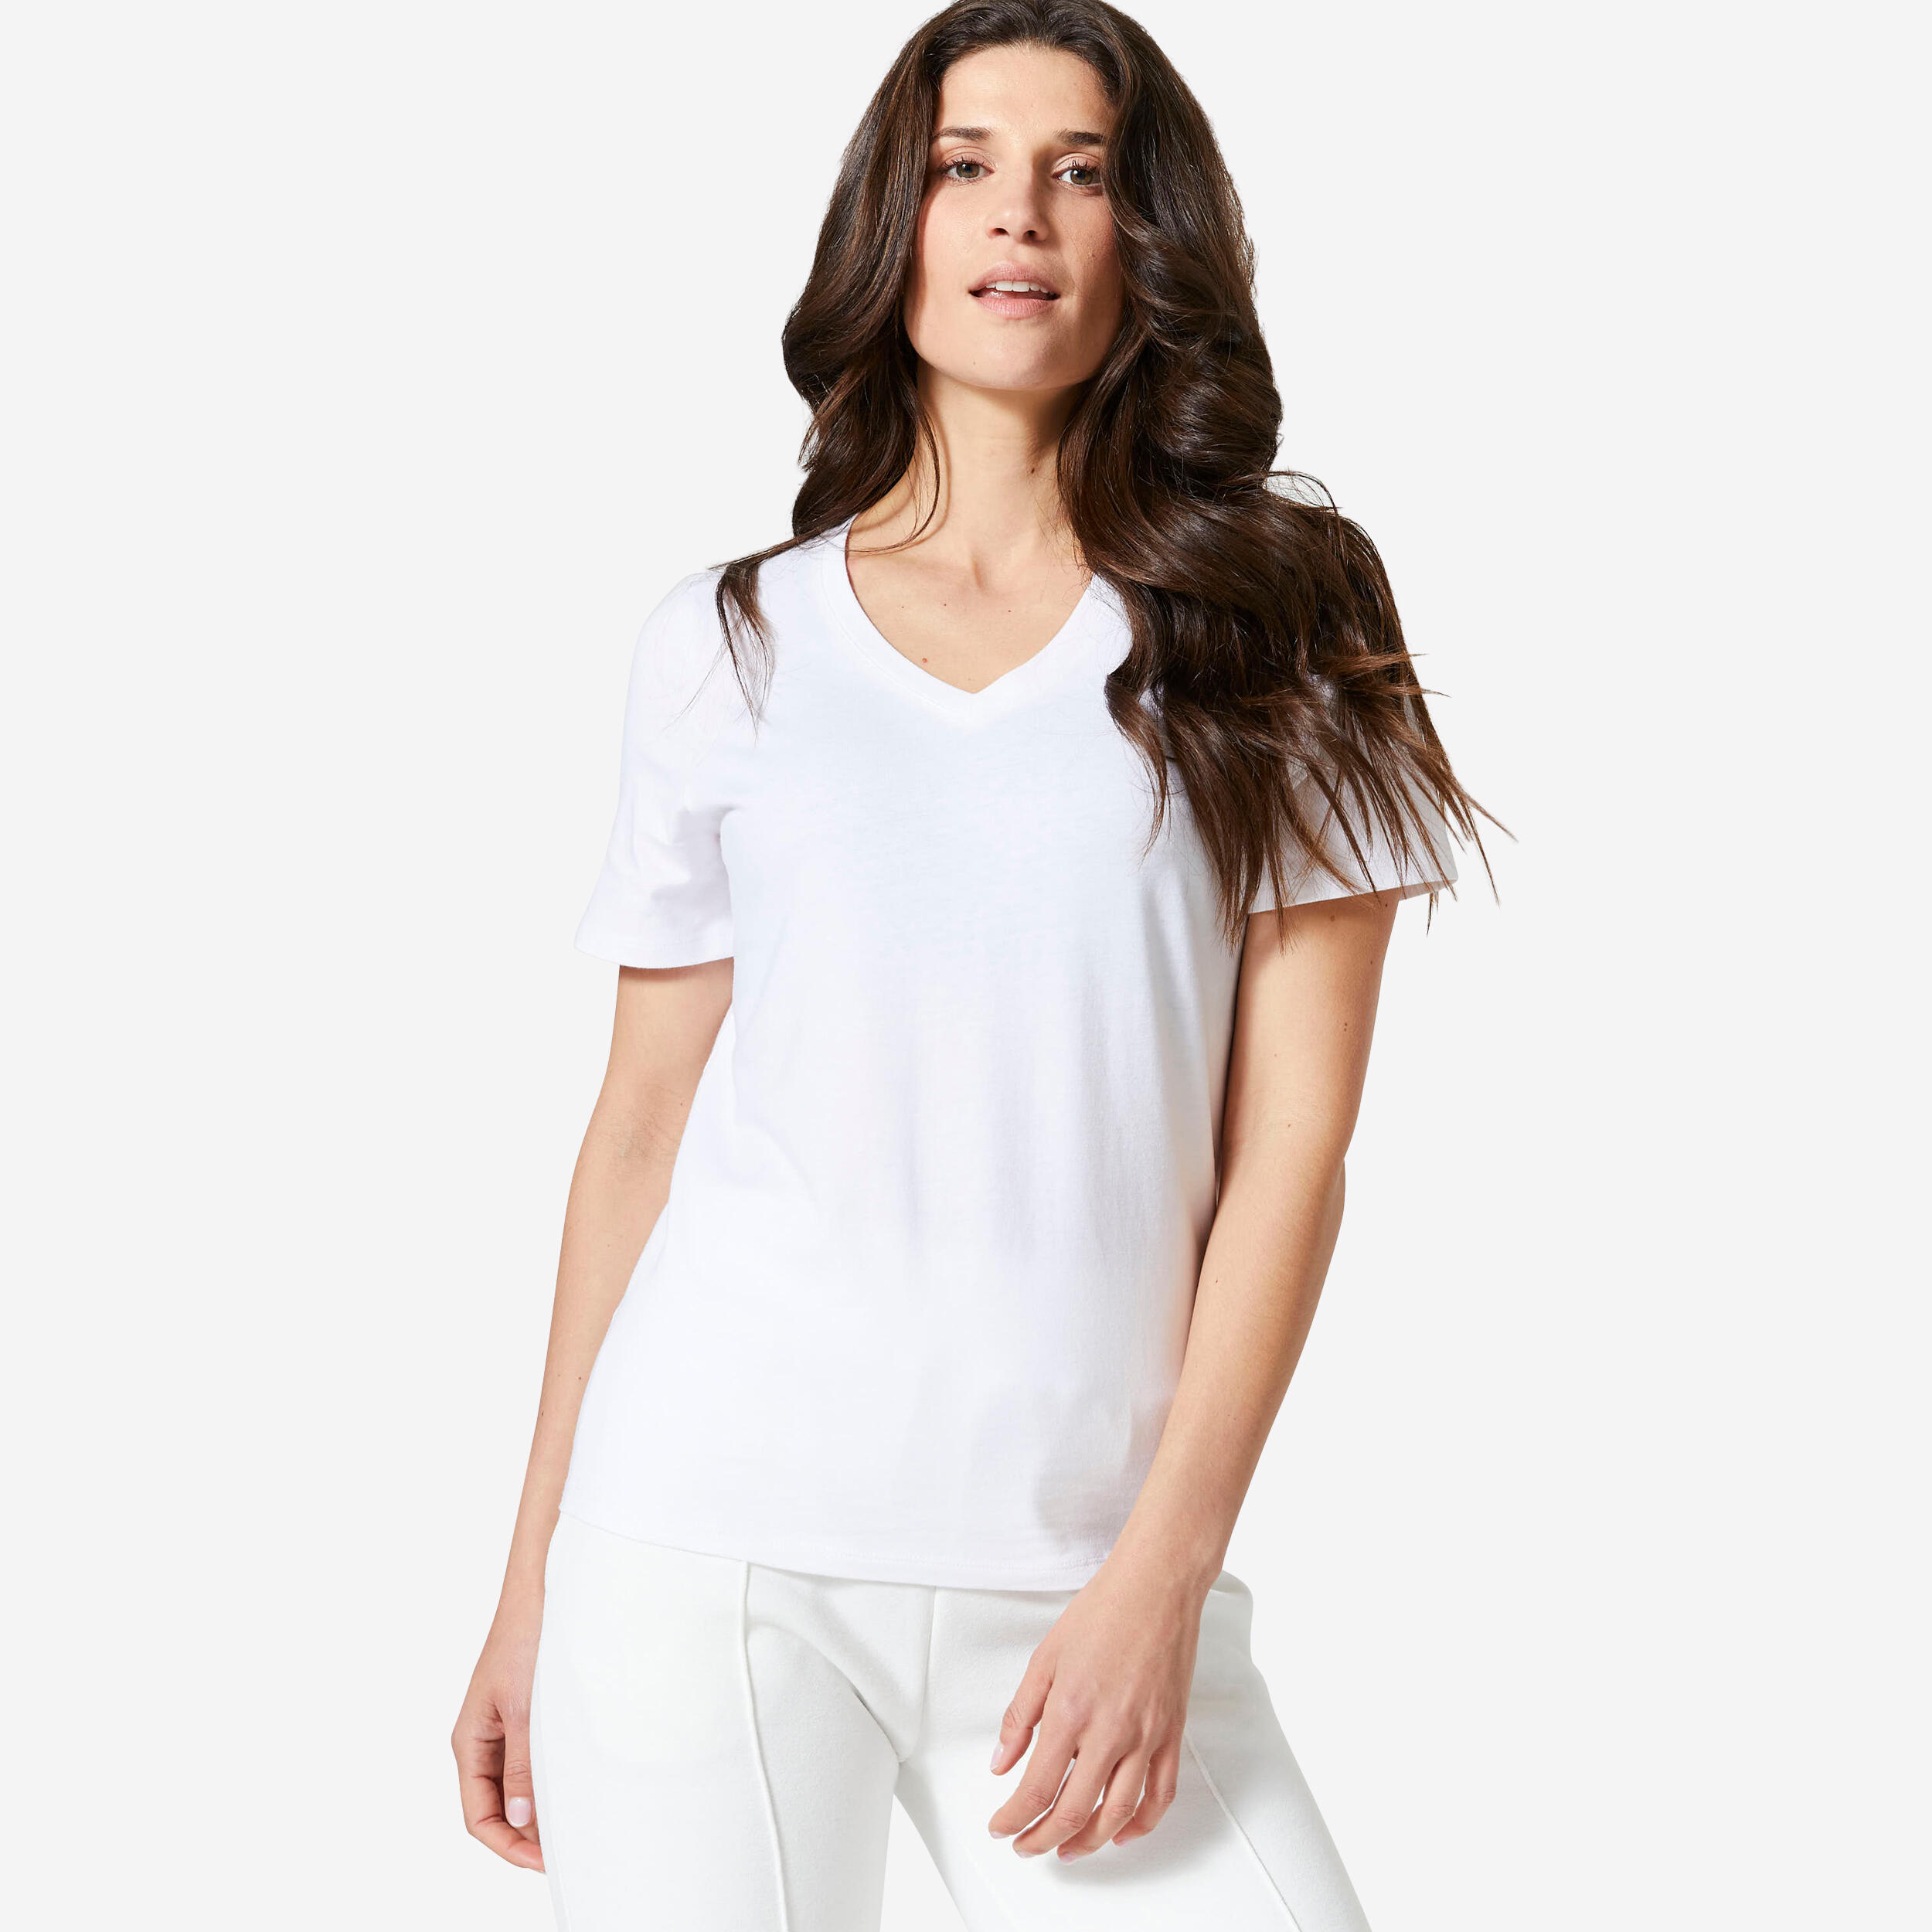 Women's V-Neck Fitness T-Shirt 500 - White 1/4